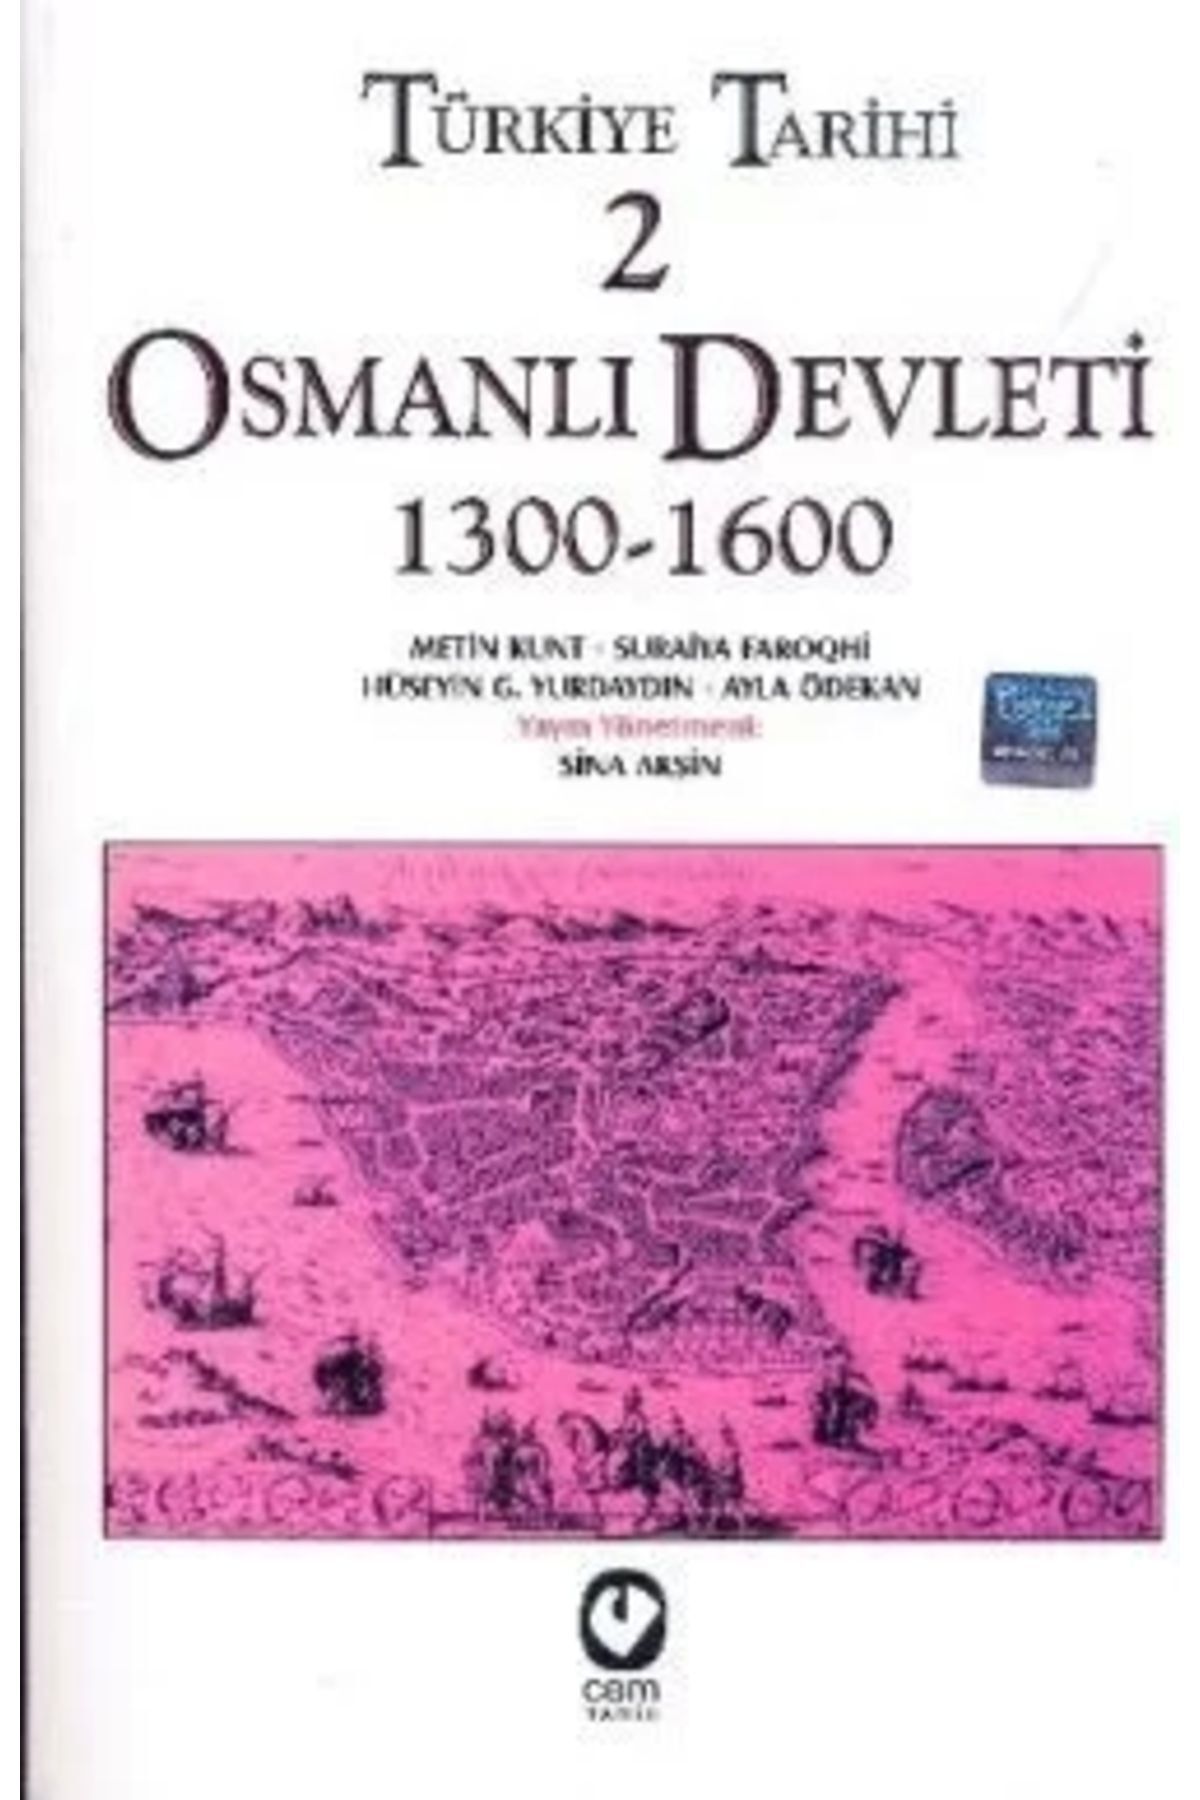 Genel Markalar Türkiye Tarihi 2 Osmanlı Devleti 1300-1600